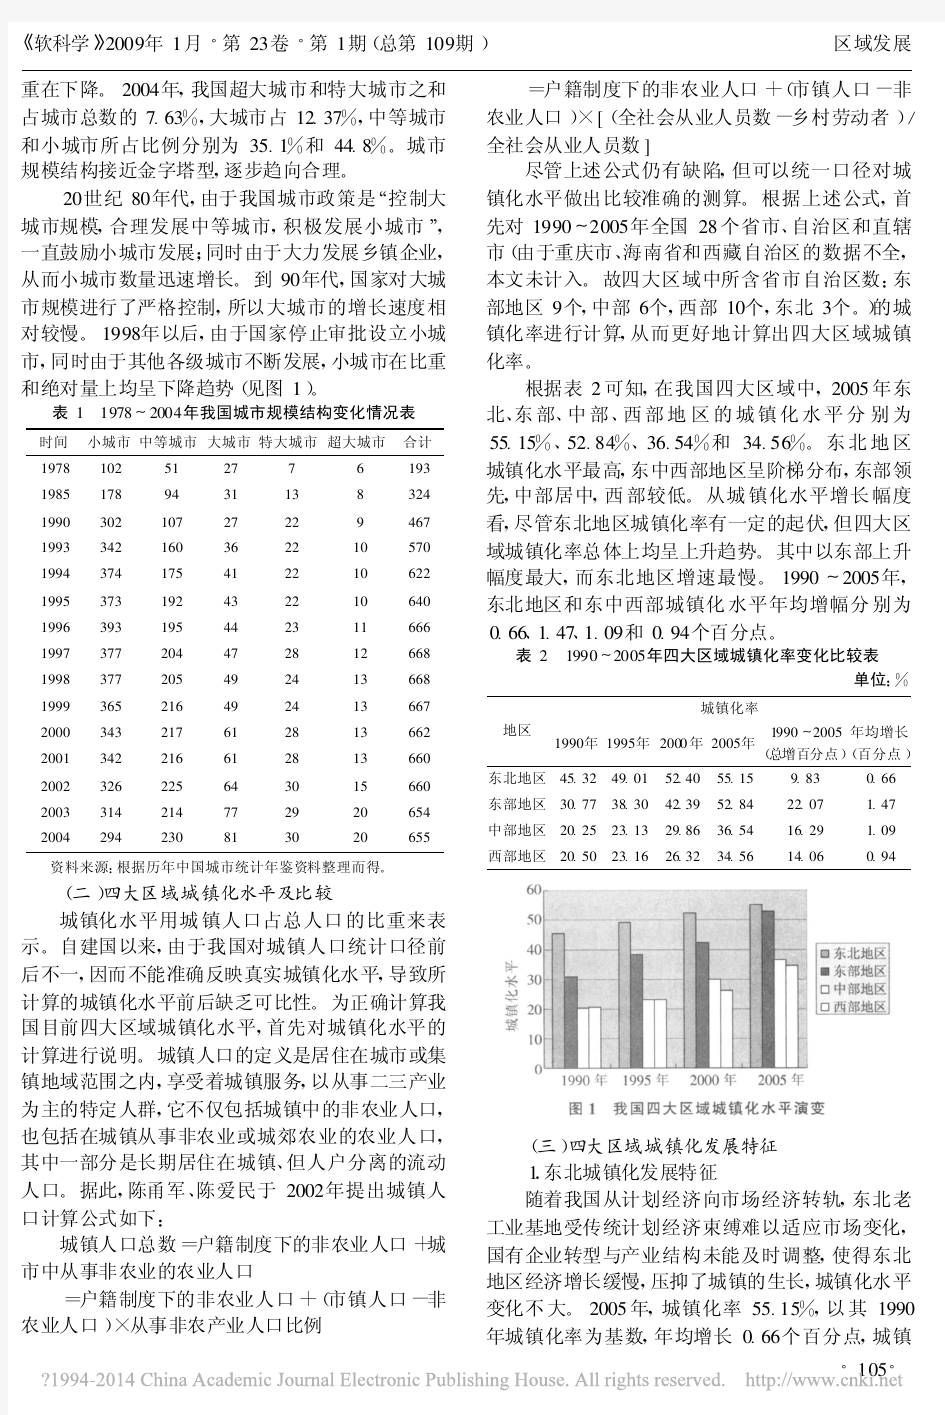 中国四大经济区域的城镇化发展特征与趋势比较_白志礼